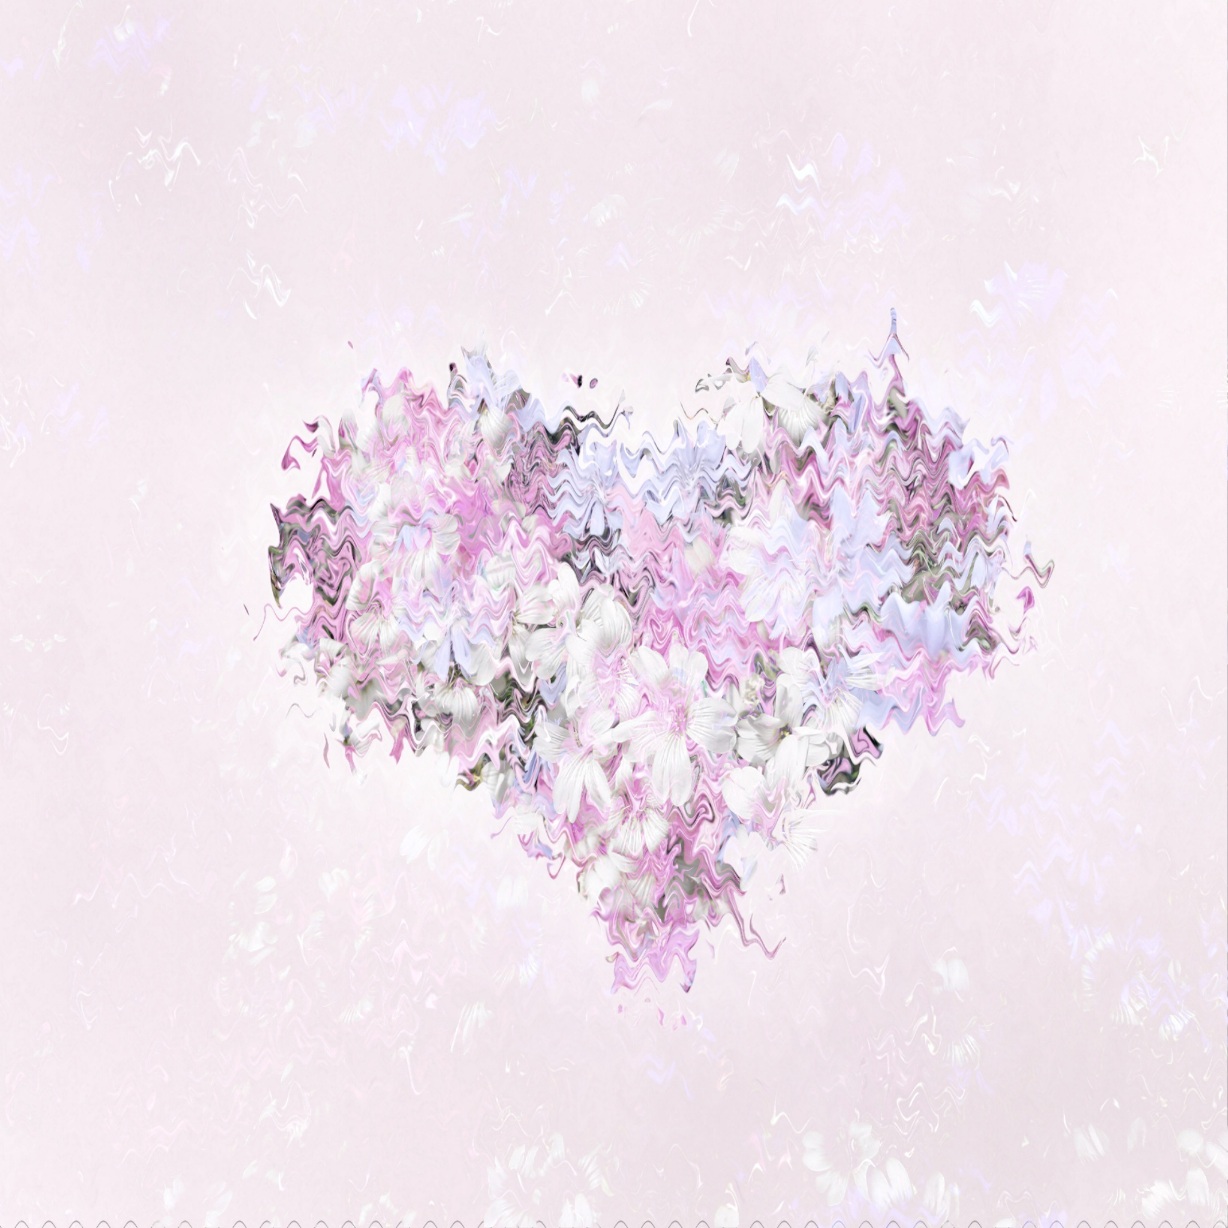 Pink flowers in a heart shape.